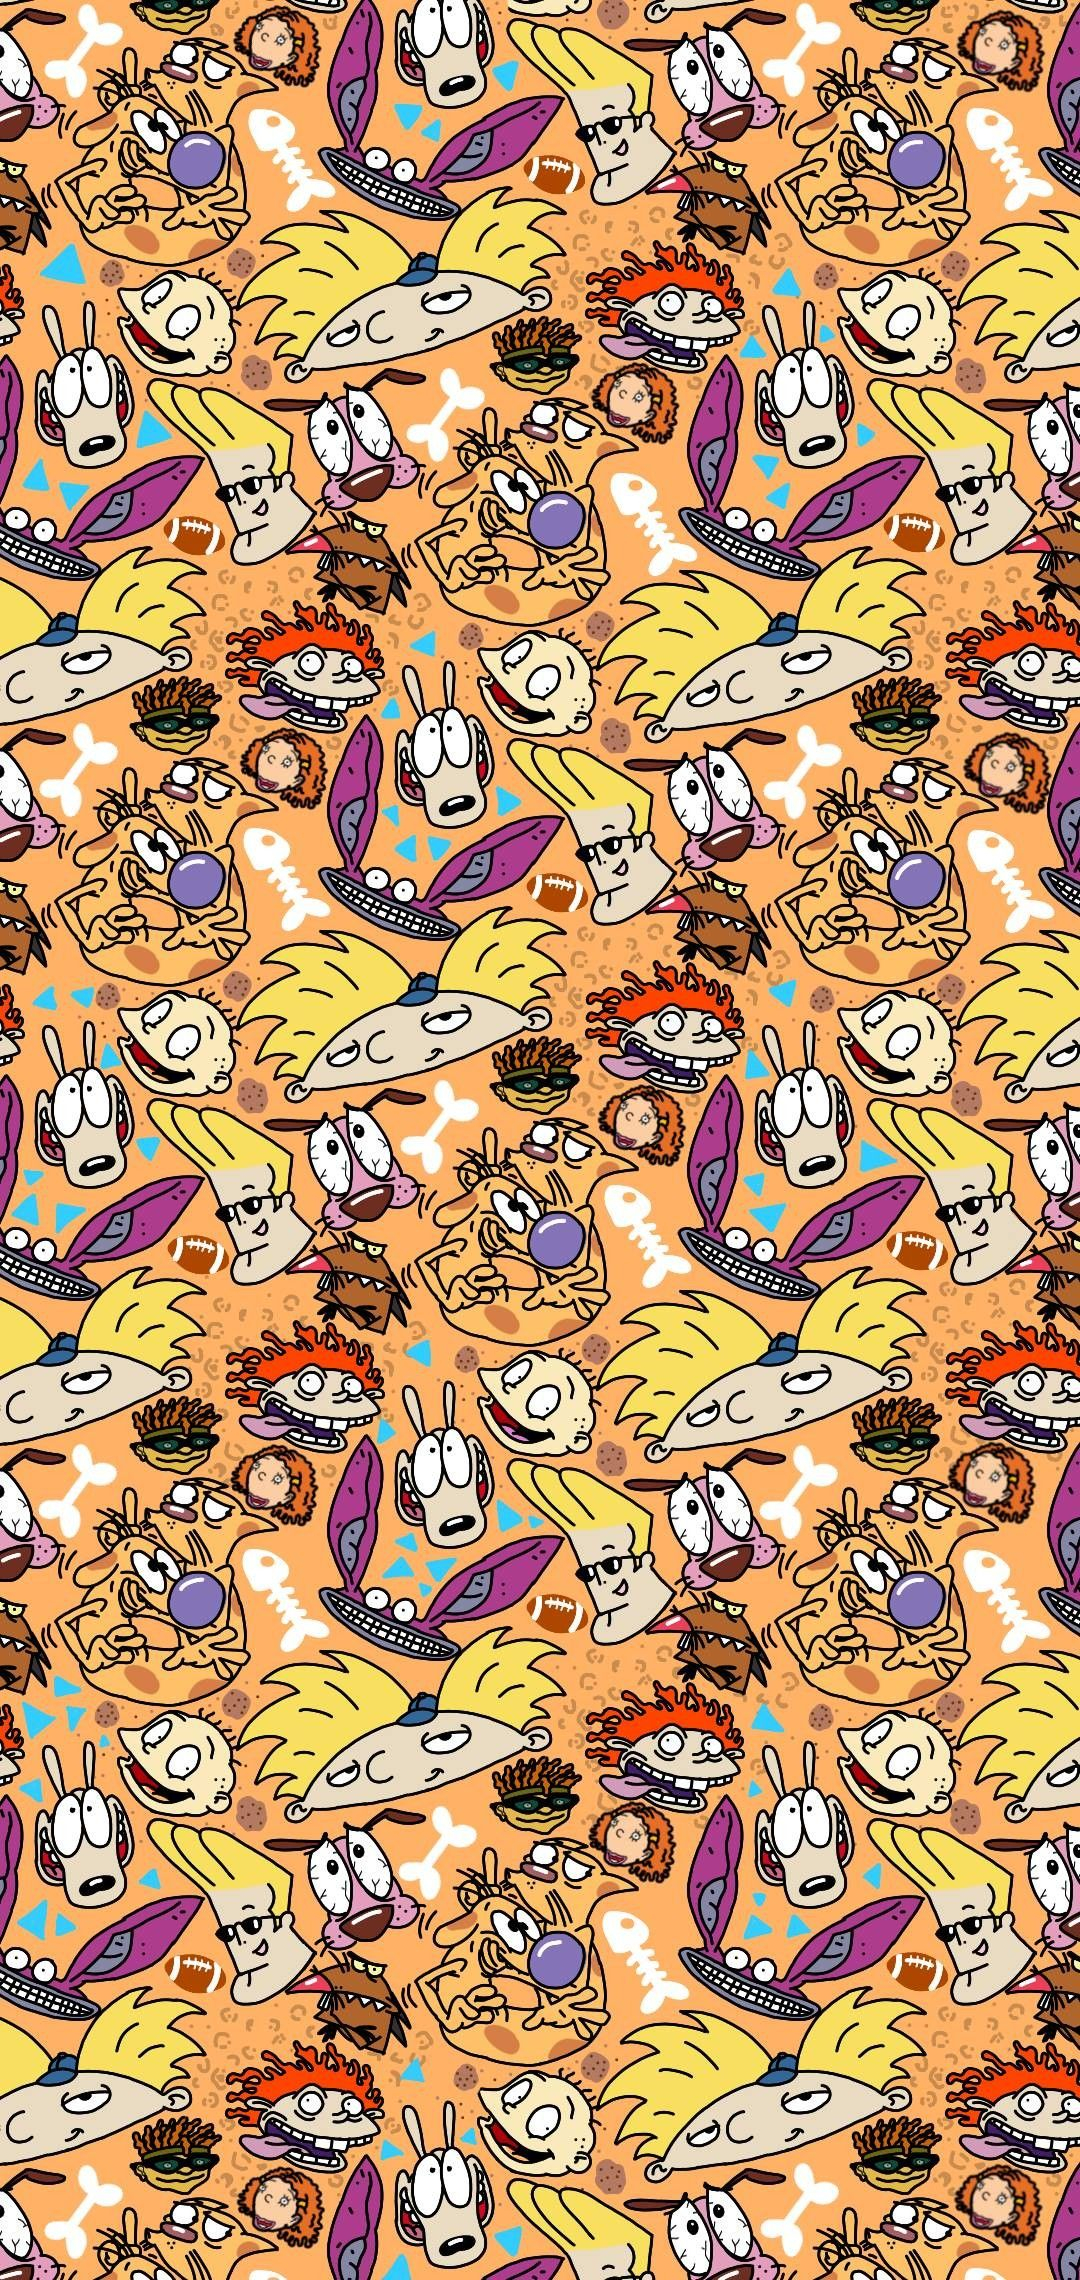 1080x2280 Wallpaper Nickelodeon | Fondos de pantalla caricaturas, Fondos de pantalla verde, Fondo de pantalla de dibujos animados